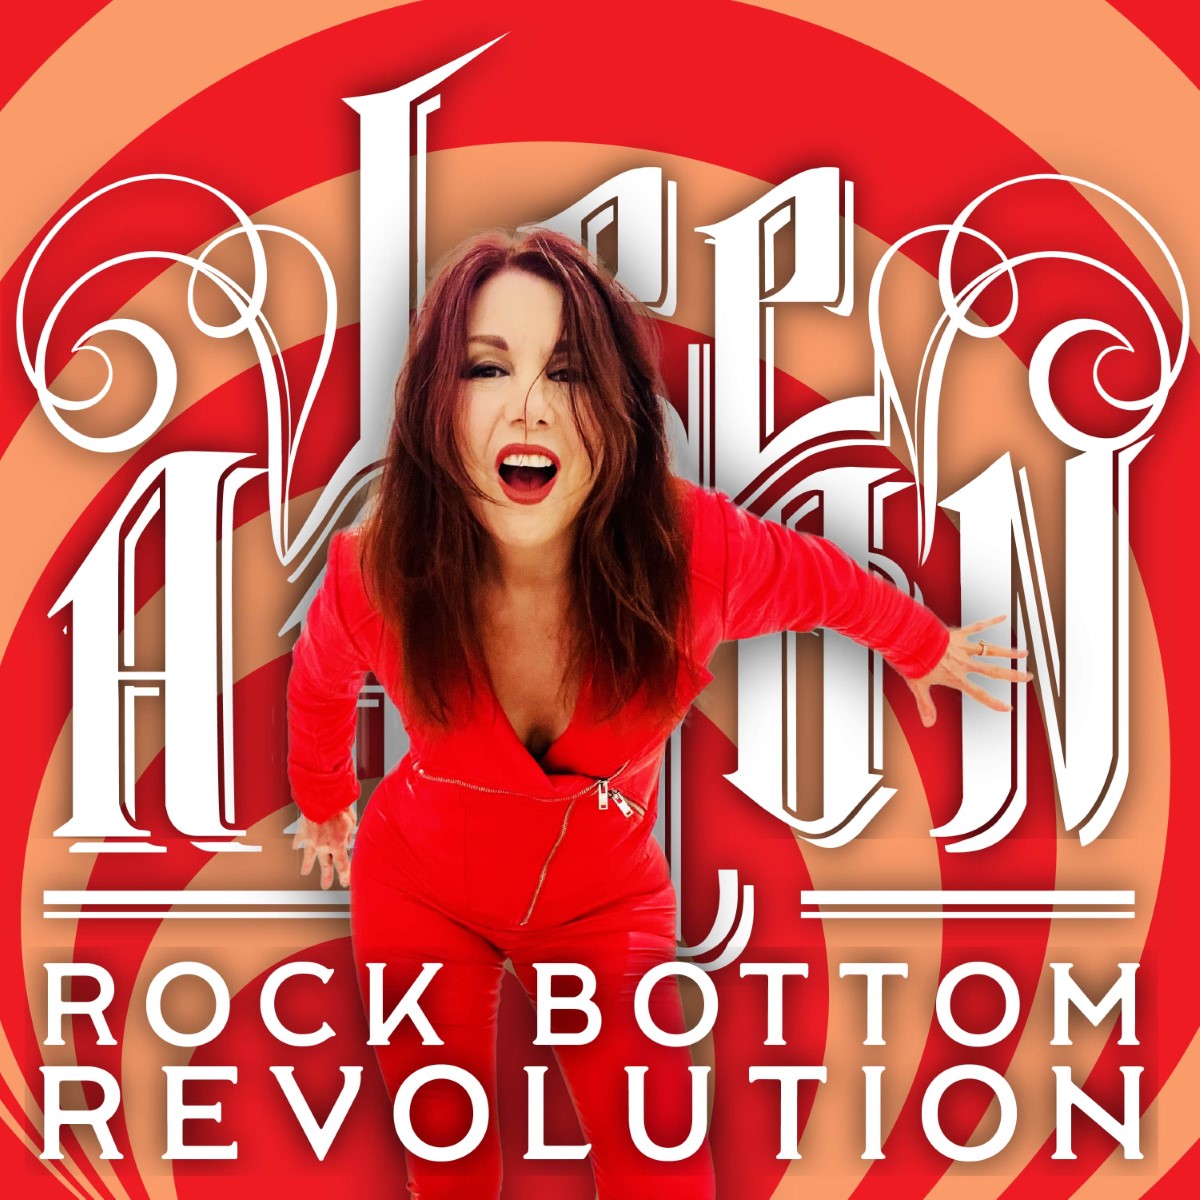 "Rock Bottom Revolution."